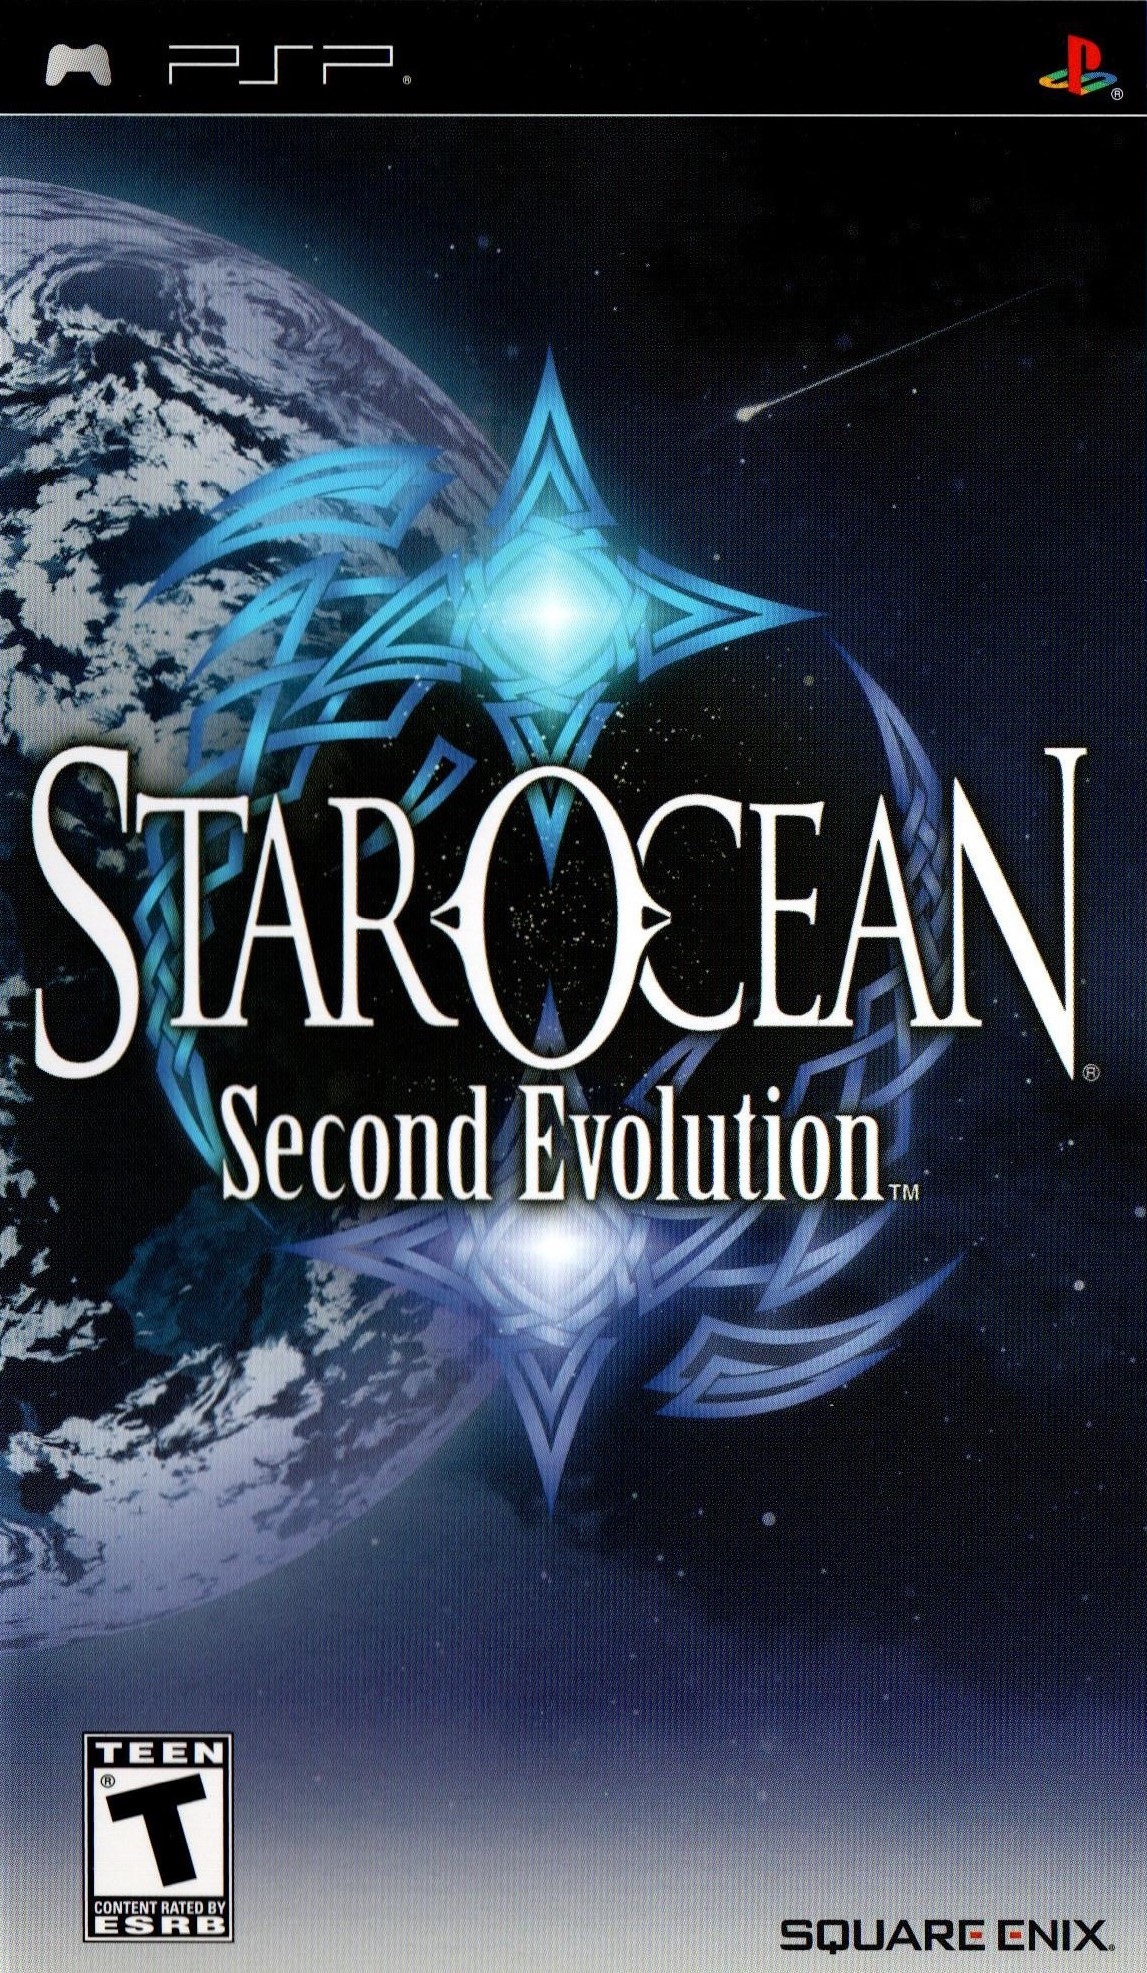 'Star Ocean: Second Evolution'